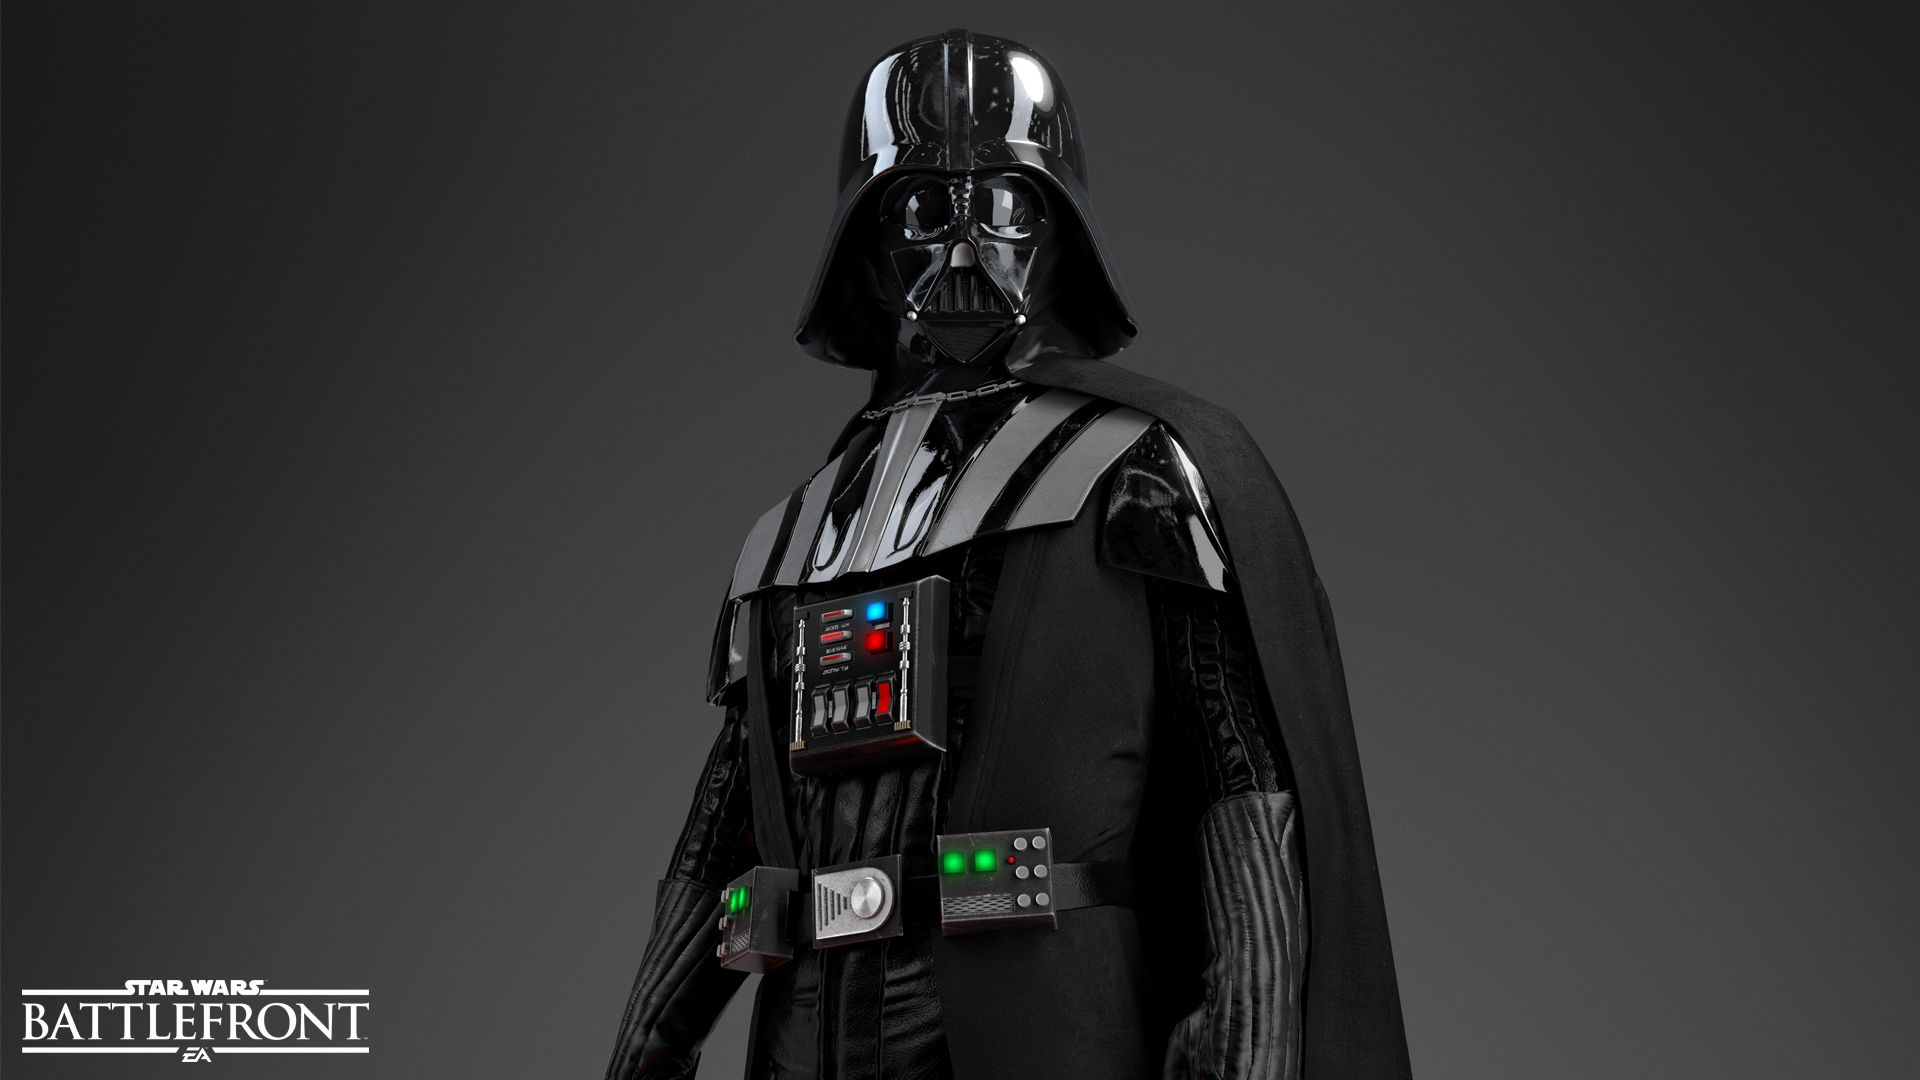 Darth Vader HD Wallpaper | 1920x1080 | ID:55811